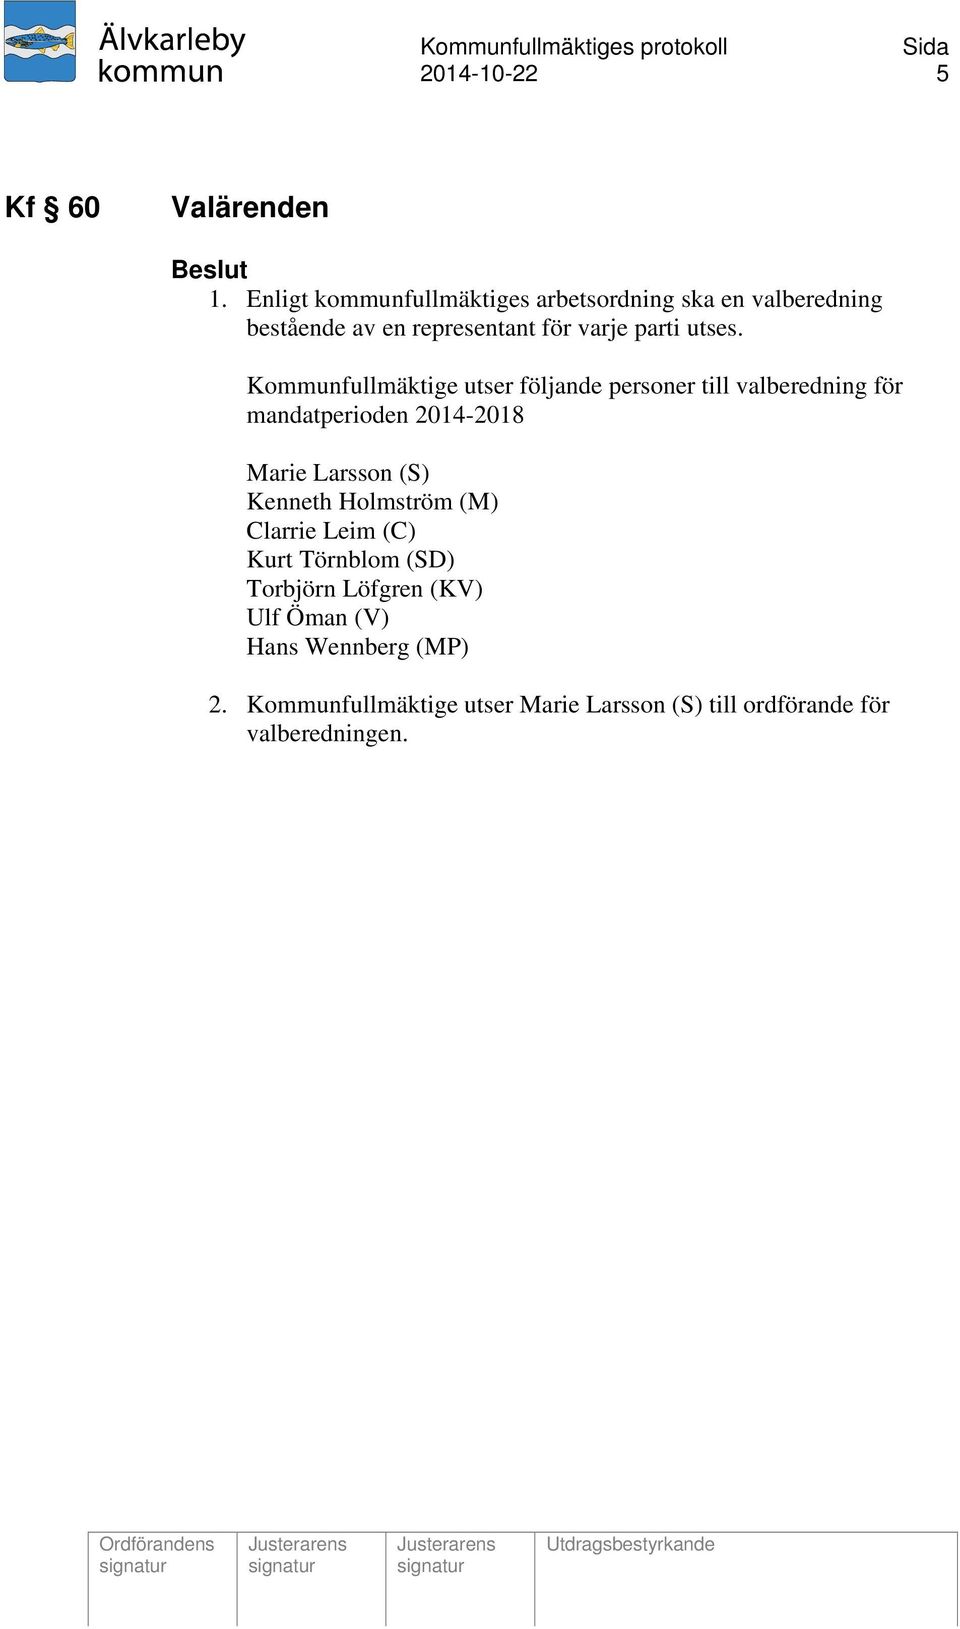 Kommunfullmäktige utser följande personer till valberedning för mandatperioden 2014-2018 Marie Larsson (S)